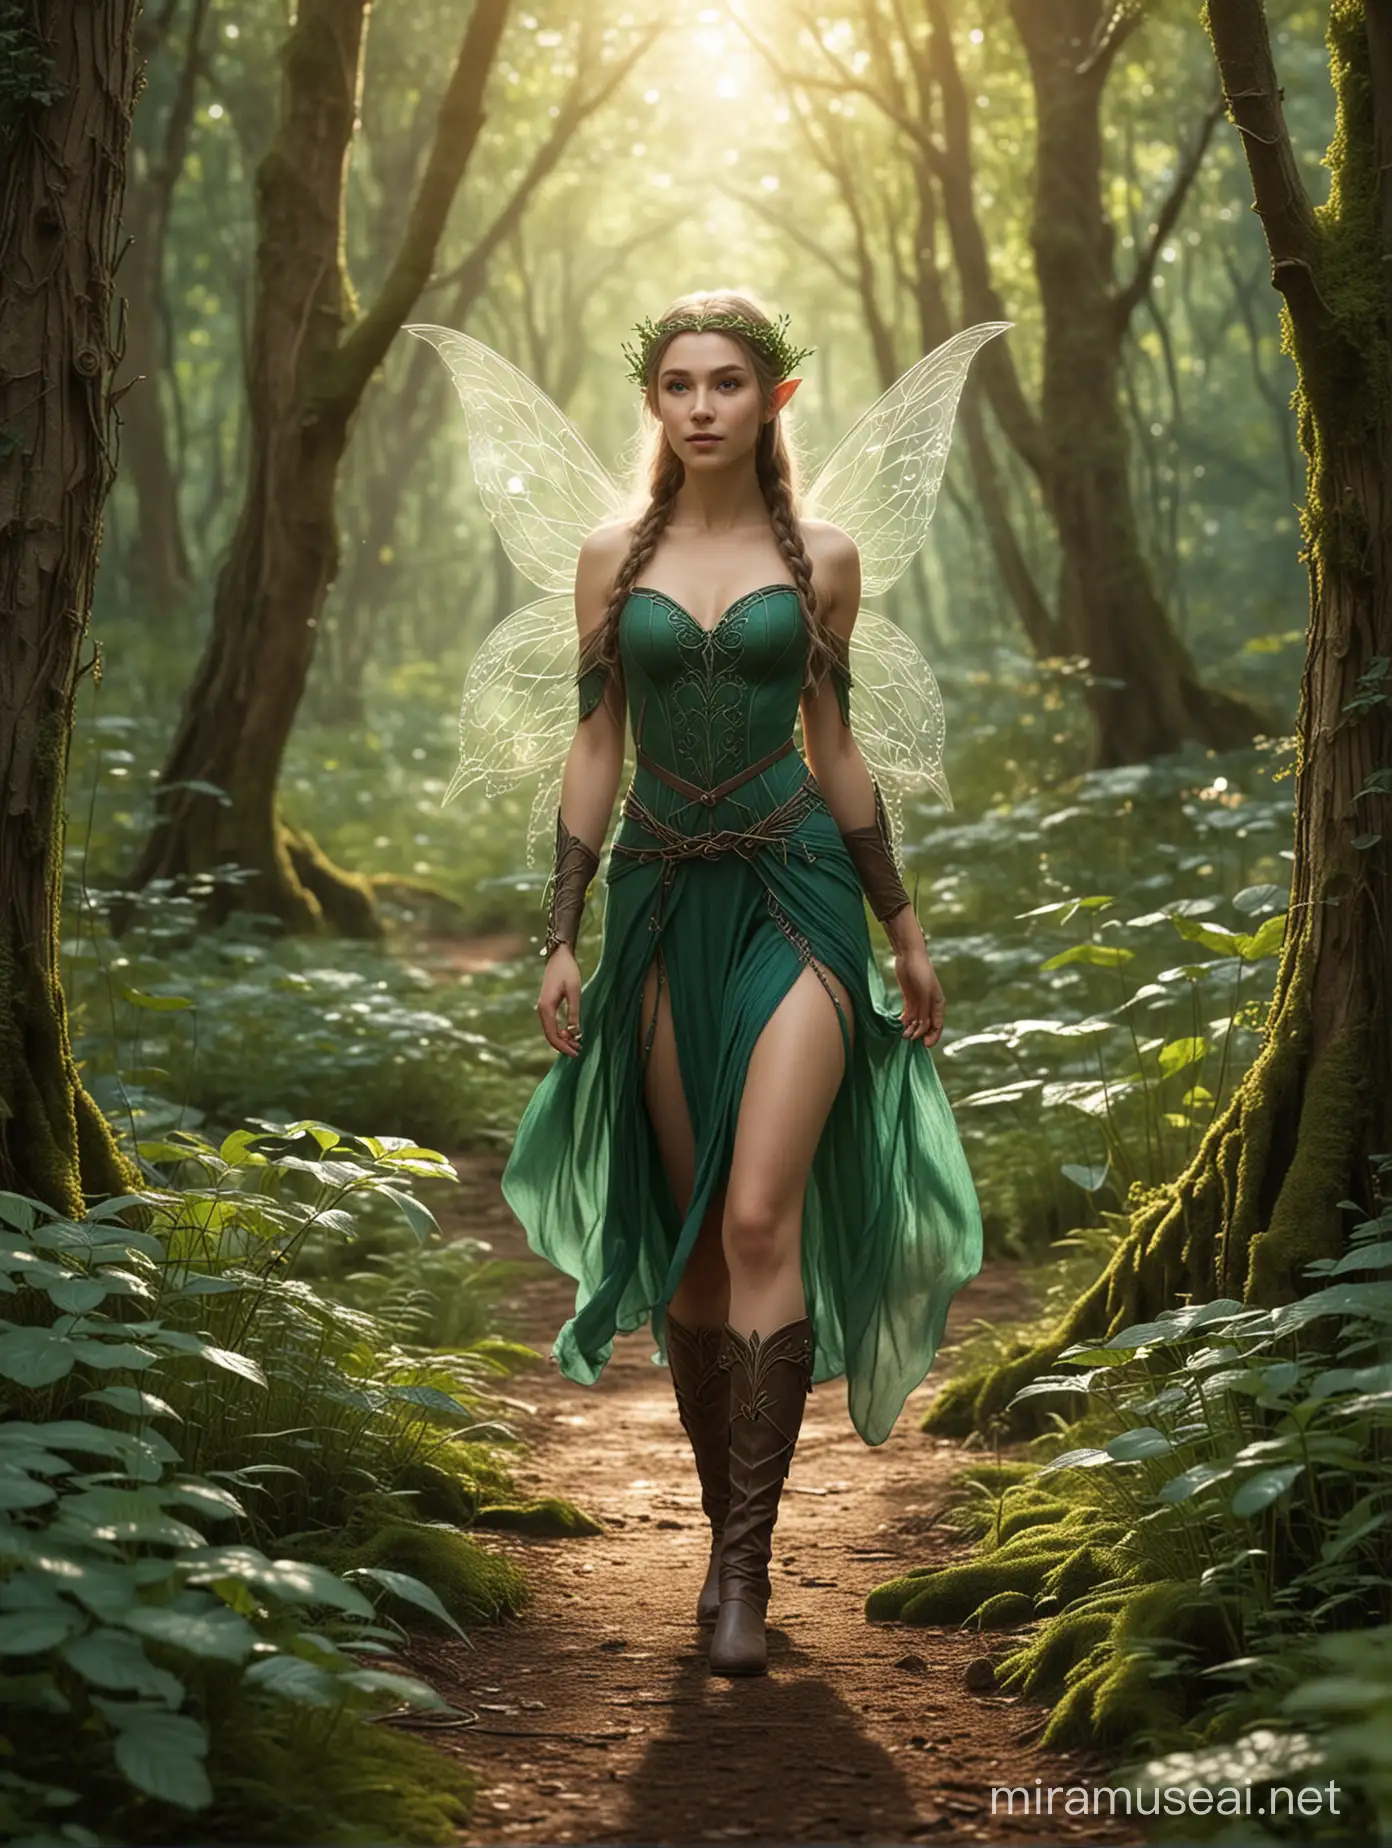 An Elven fairy walking through a beautiful forest landscape